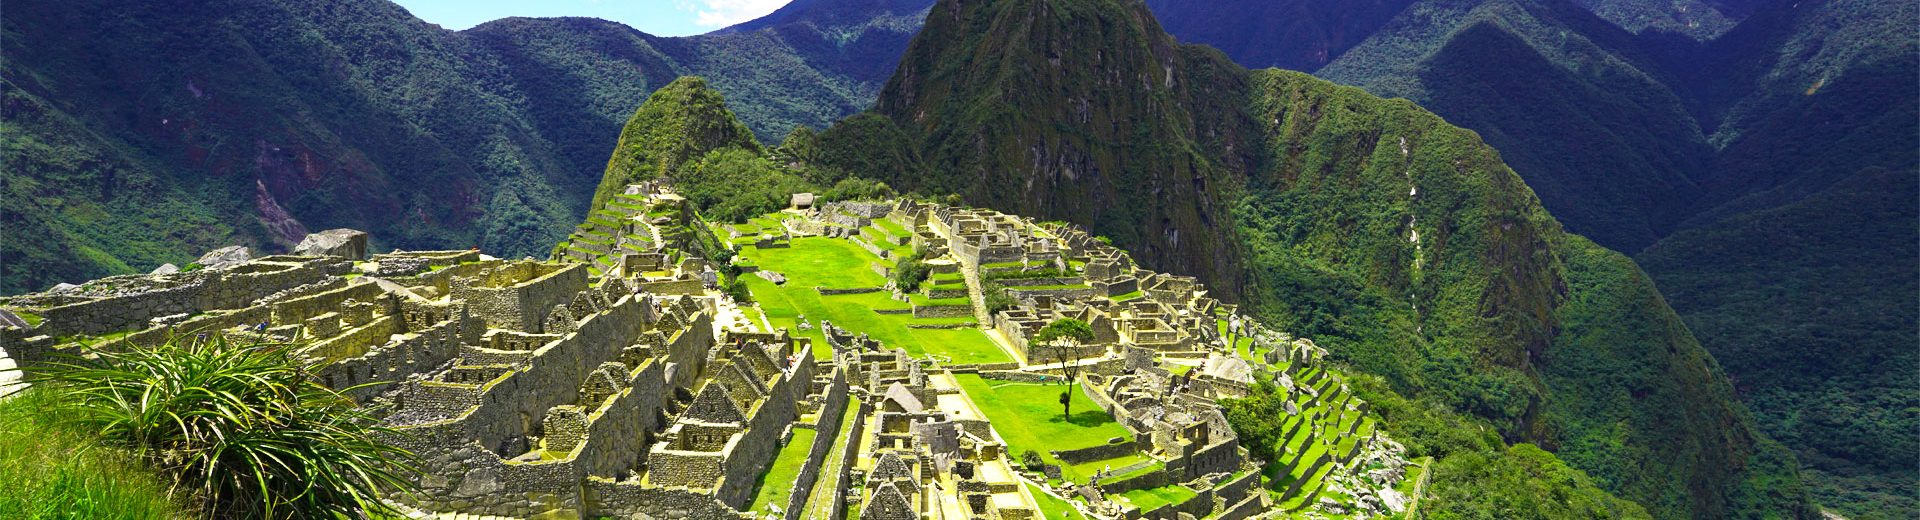 Férias no Peru: Dicas para sua viagem de sucesso